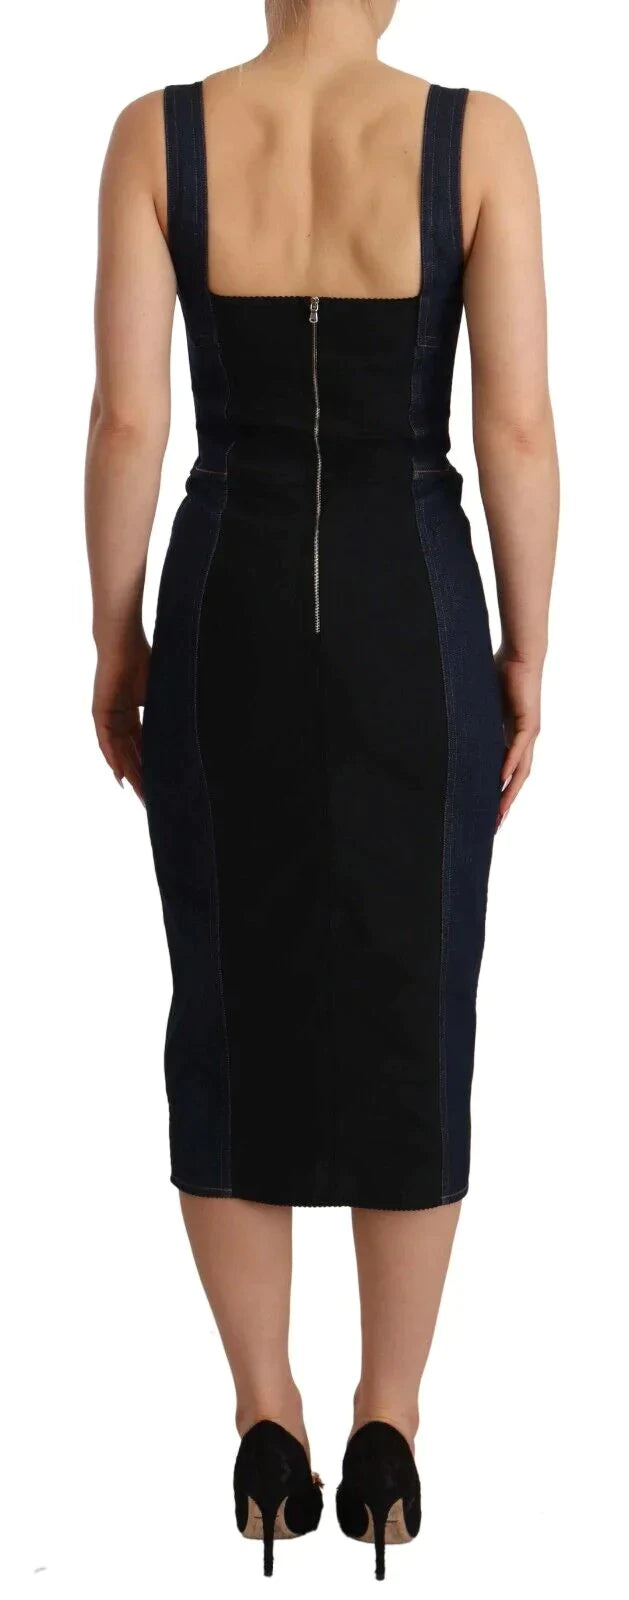 Dolce & Gabbana Dark Blue Cotton Denim Sheath Midi Dress Blue, Dolce & Gabbana, Dresses - Women - Clothing, feed-1, IT38|XS at SEYMAYKA